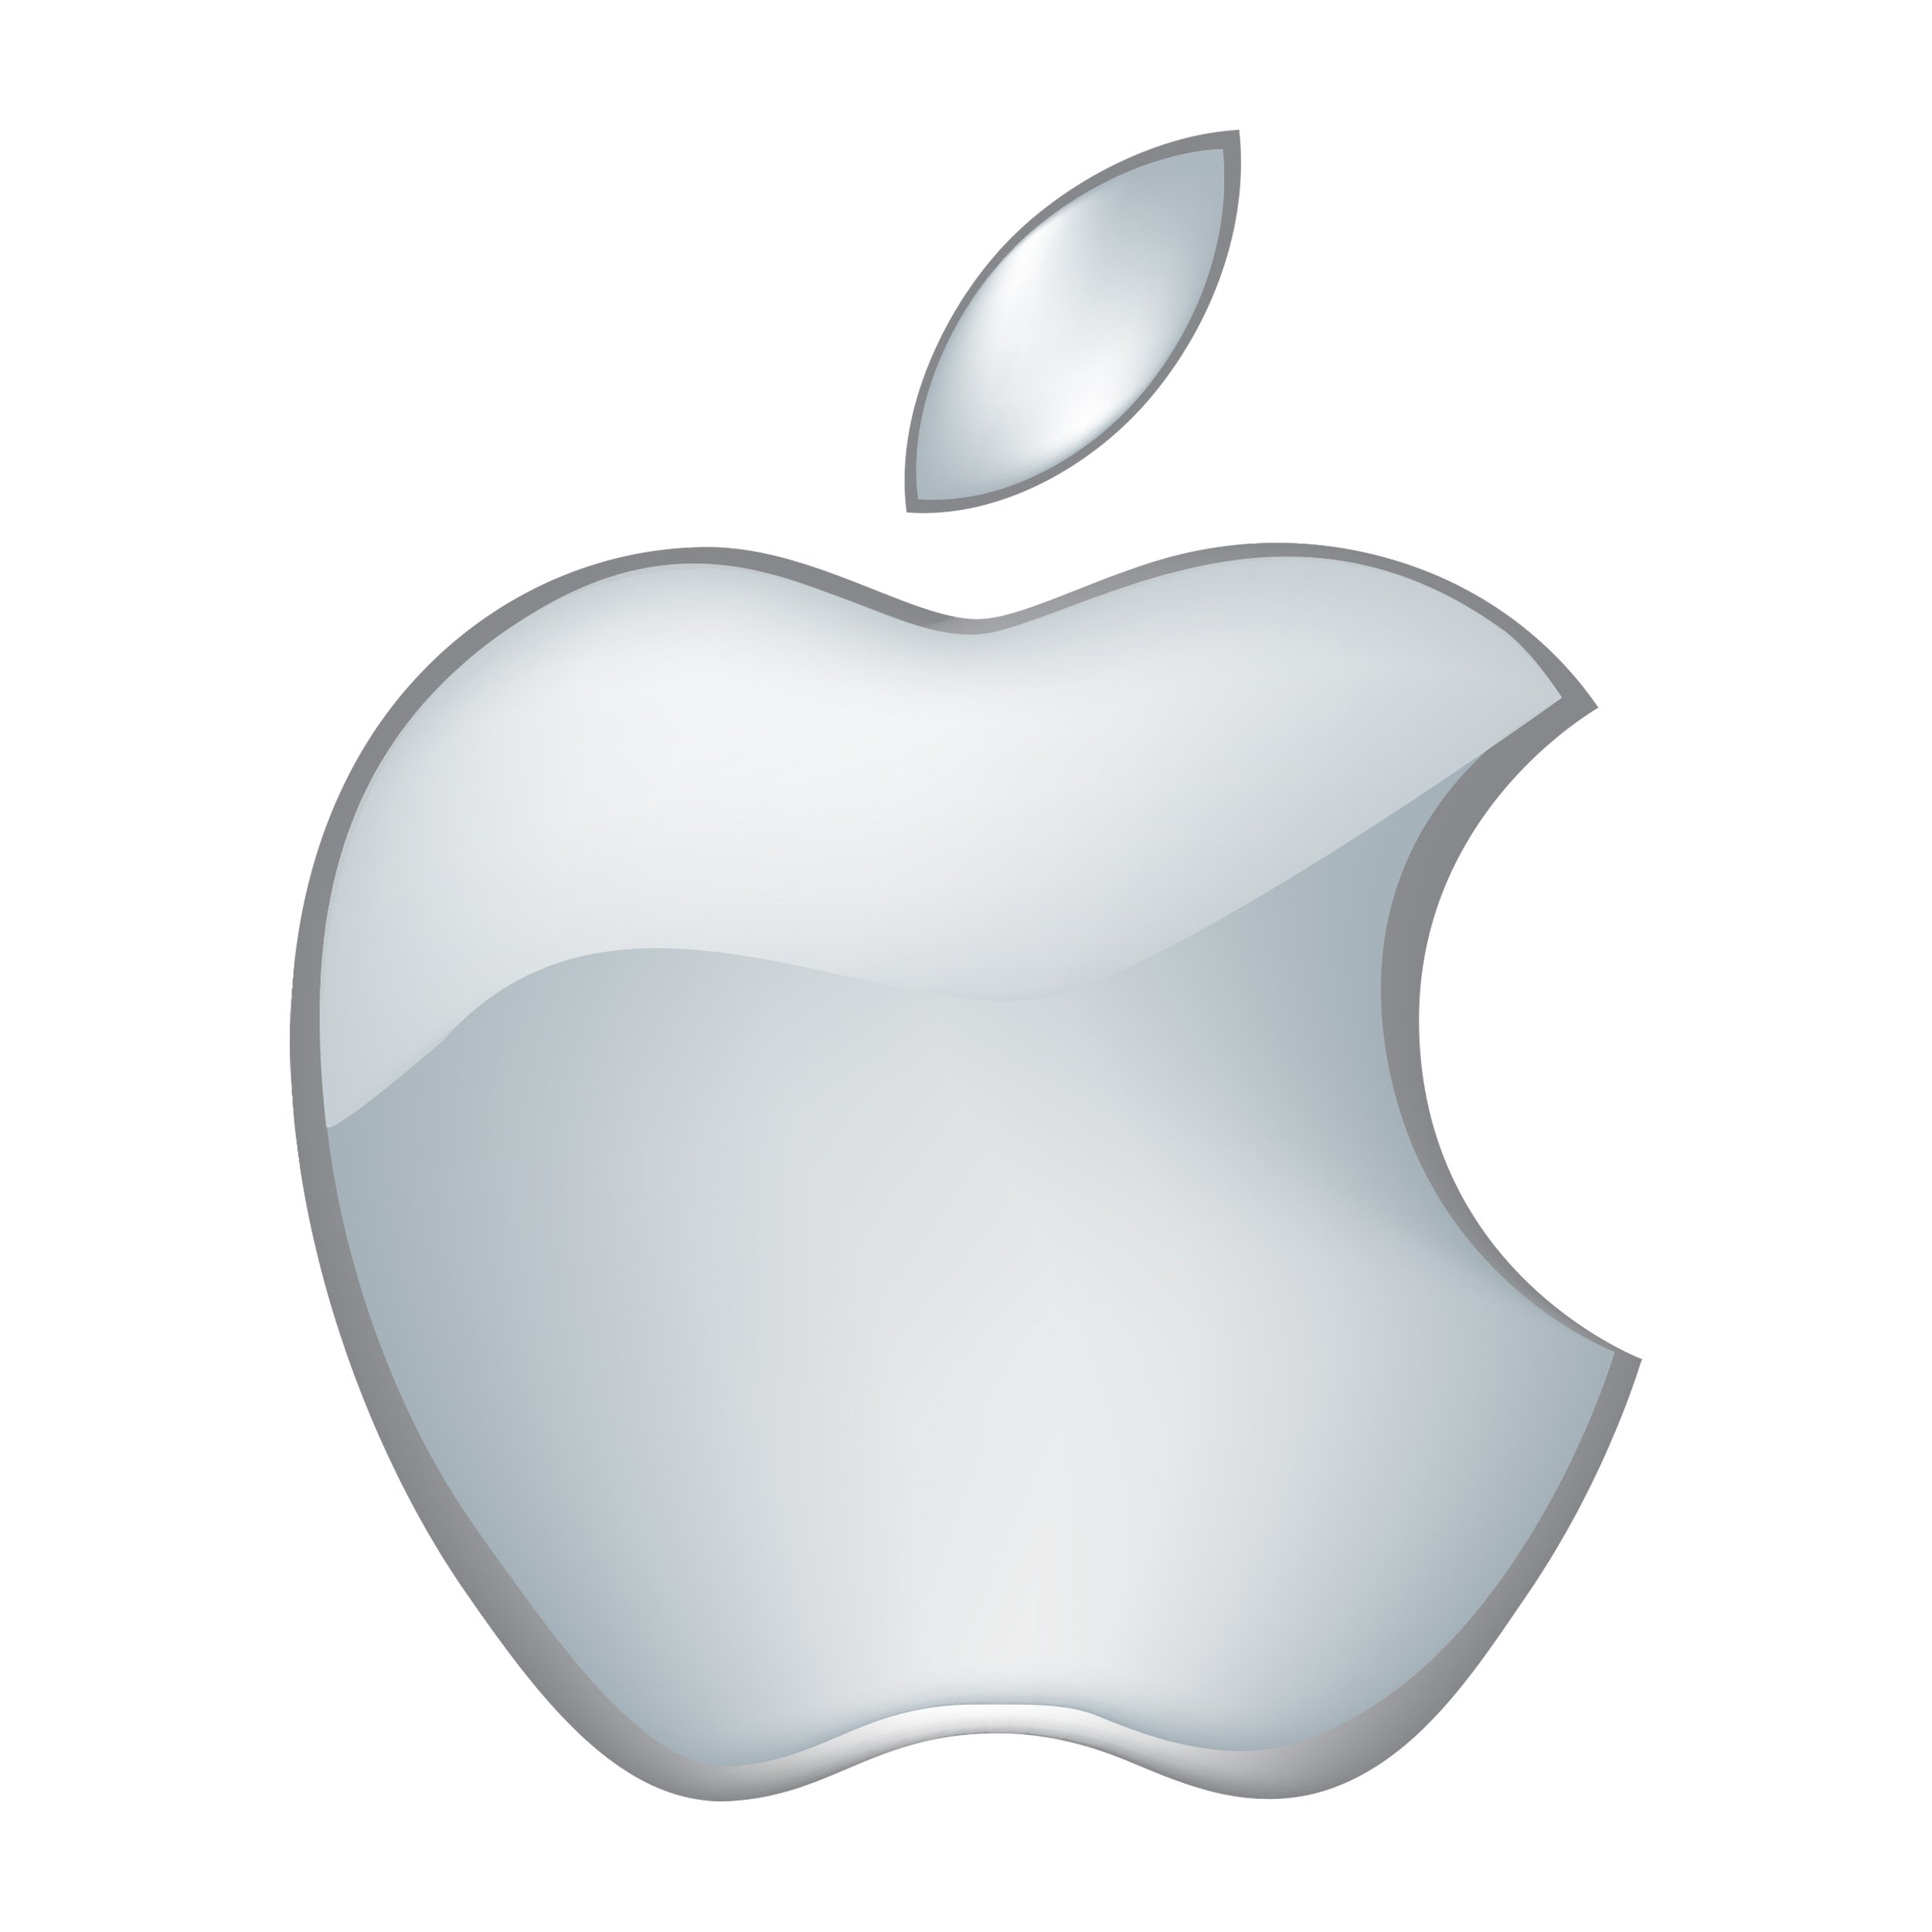 Синий значок айфон. Логотип Эппл. Apple logo 2001. Айфон значок Эппл. Логотип айфона яблоко.